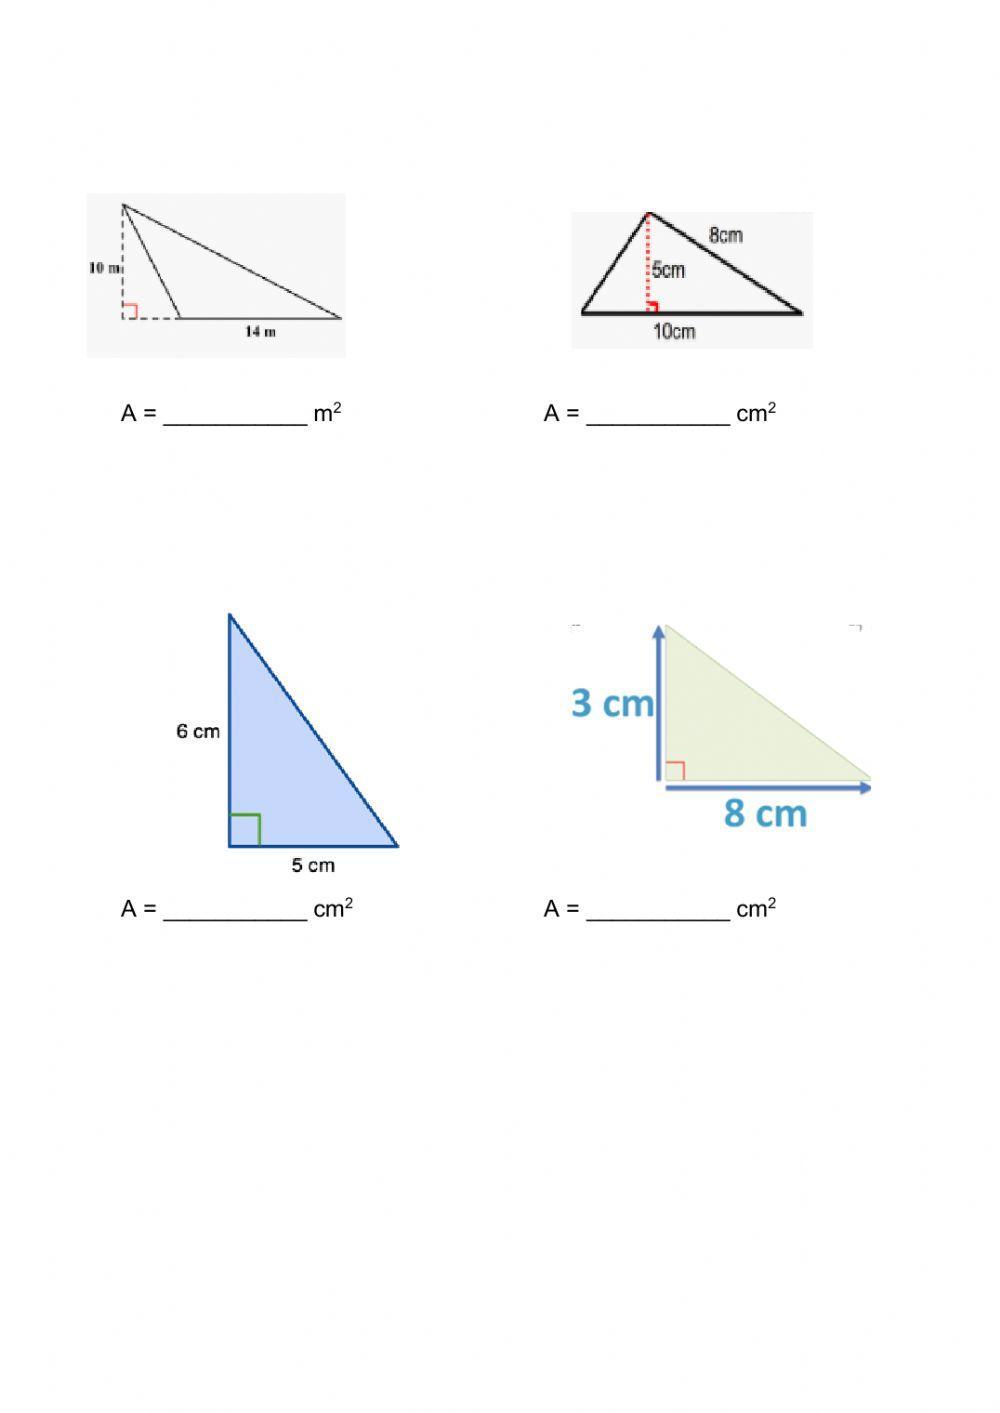 Area of Triangle